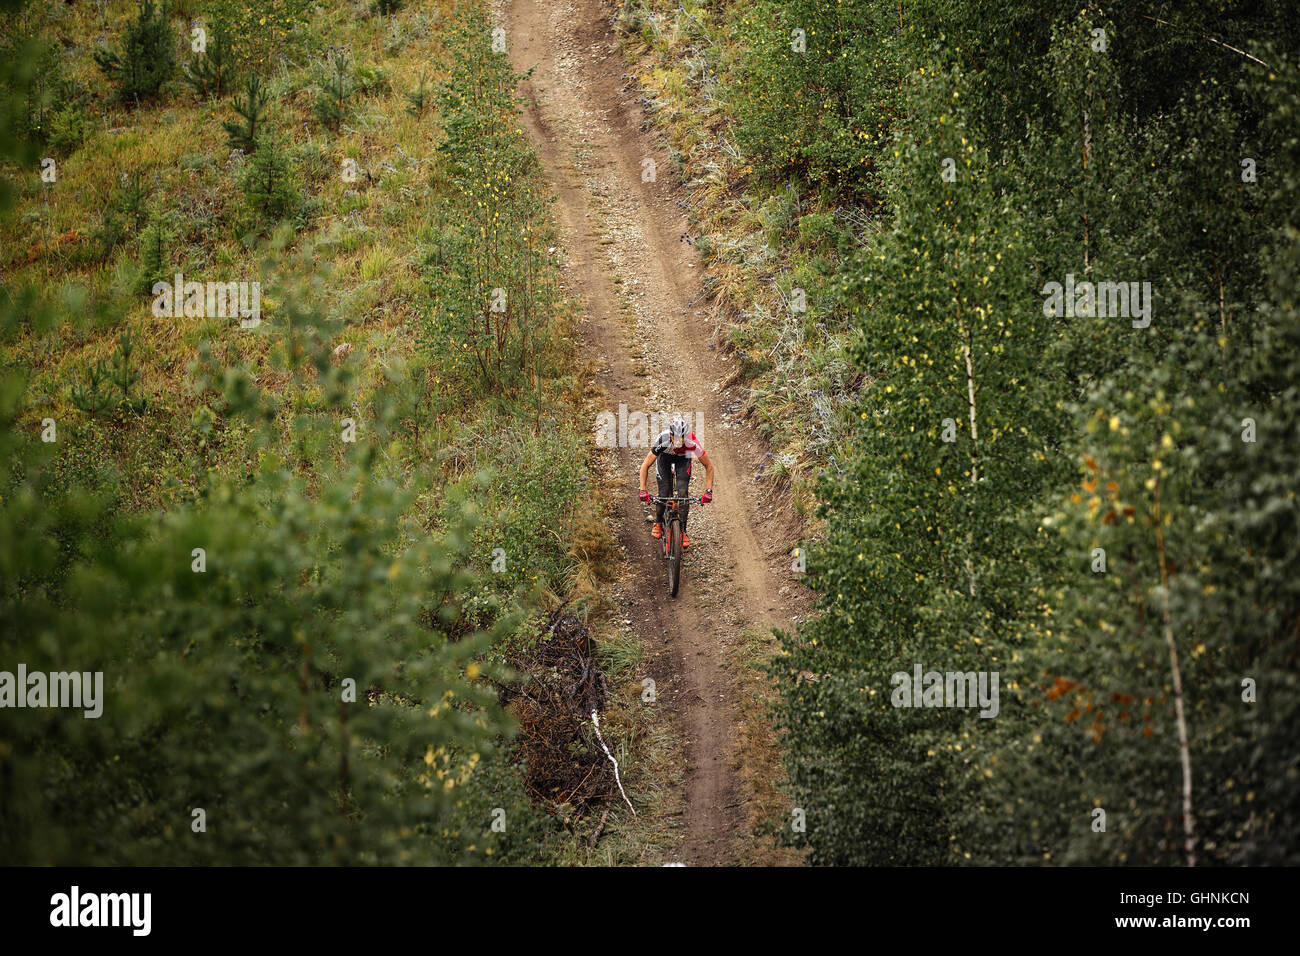 Plan général rider un cycliste, équitation le long d'un sentier forestier au cours de compétitions régionales sur les pays location Banque D'Images